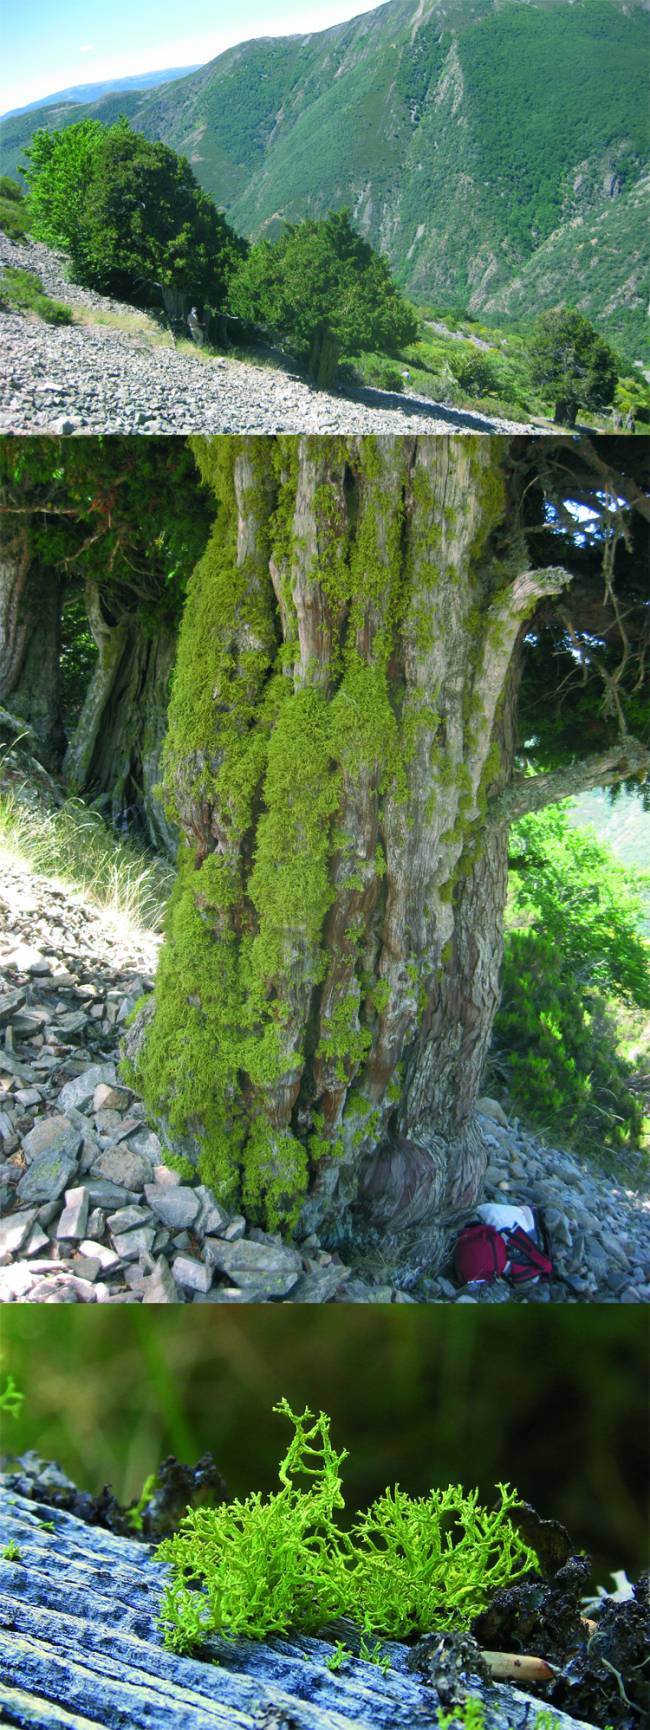 Imagen de los tejos, tronco de un árbol cubierto del liquen y detalle de la 'Letharia vulpina'.